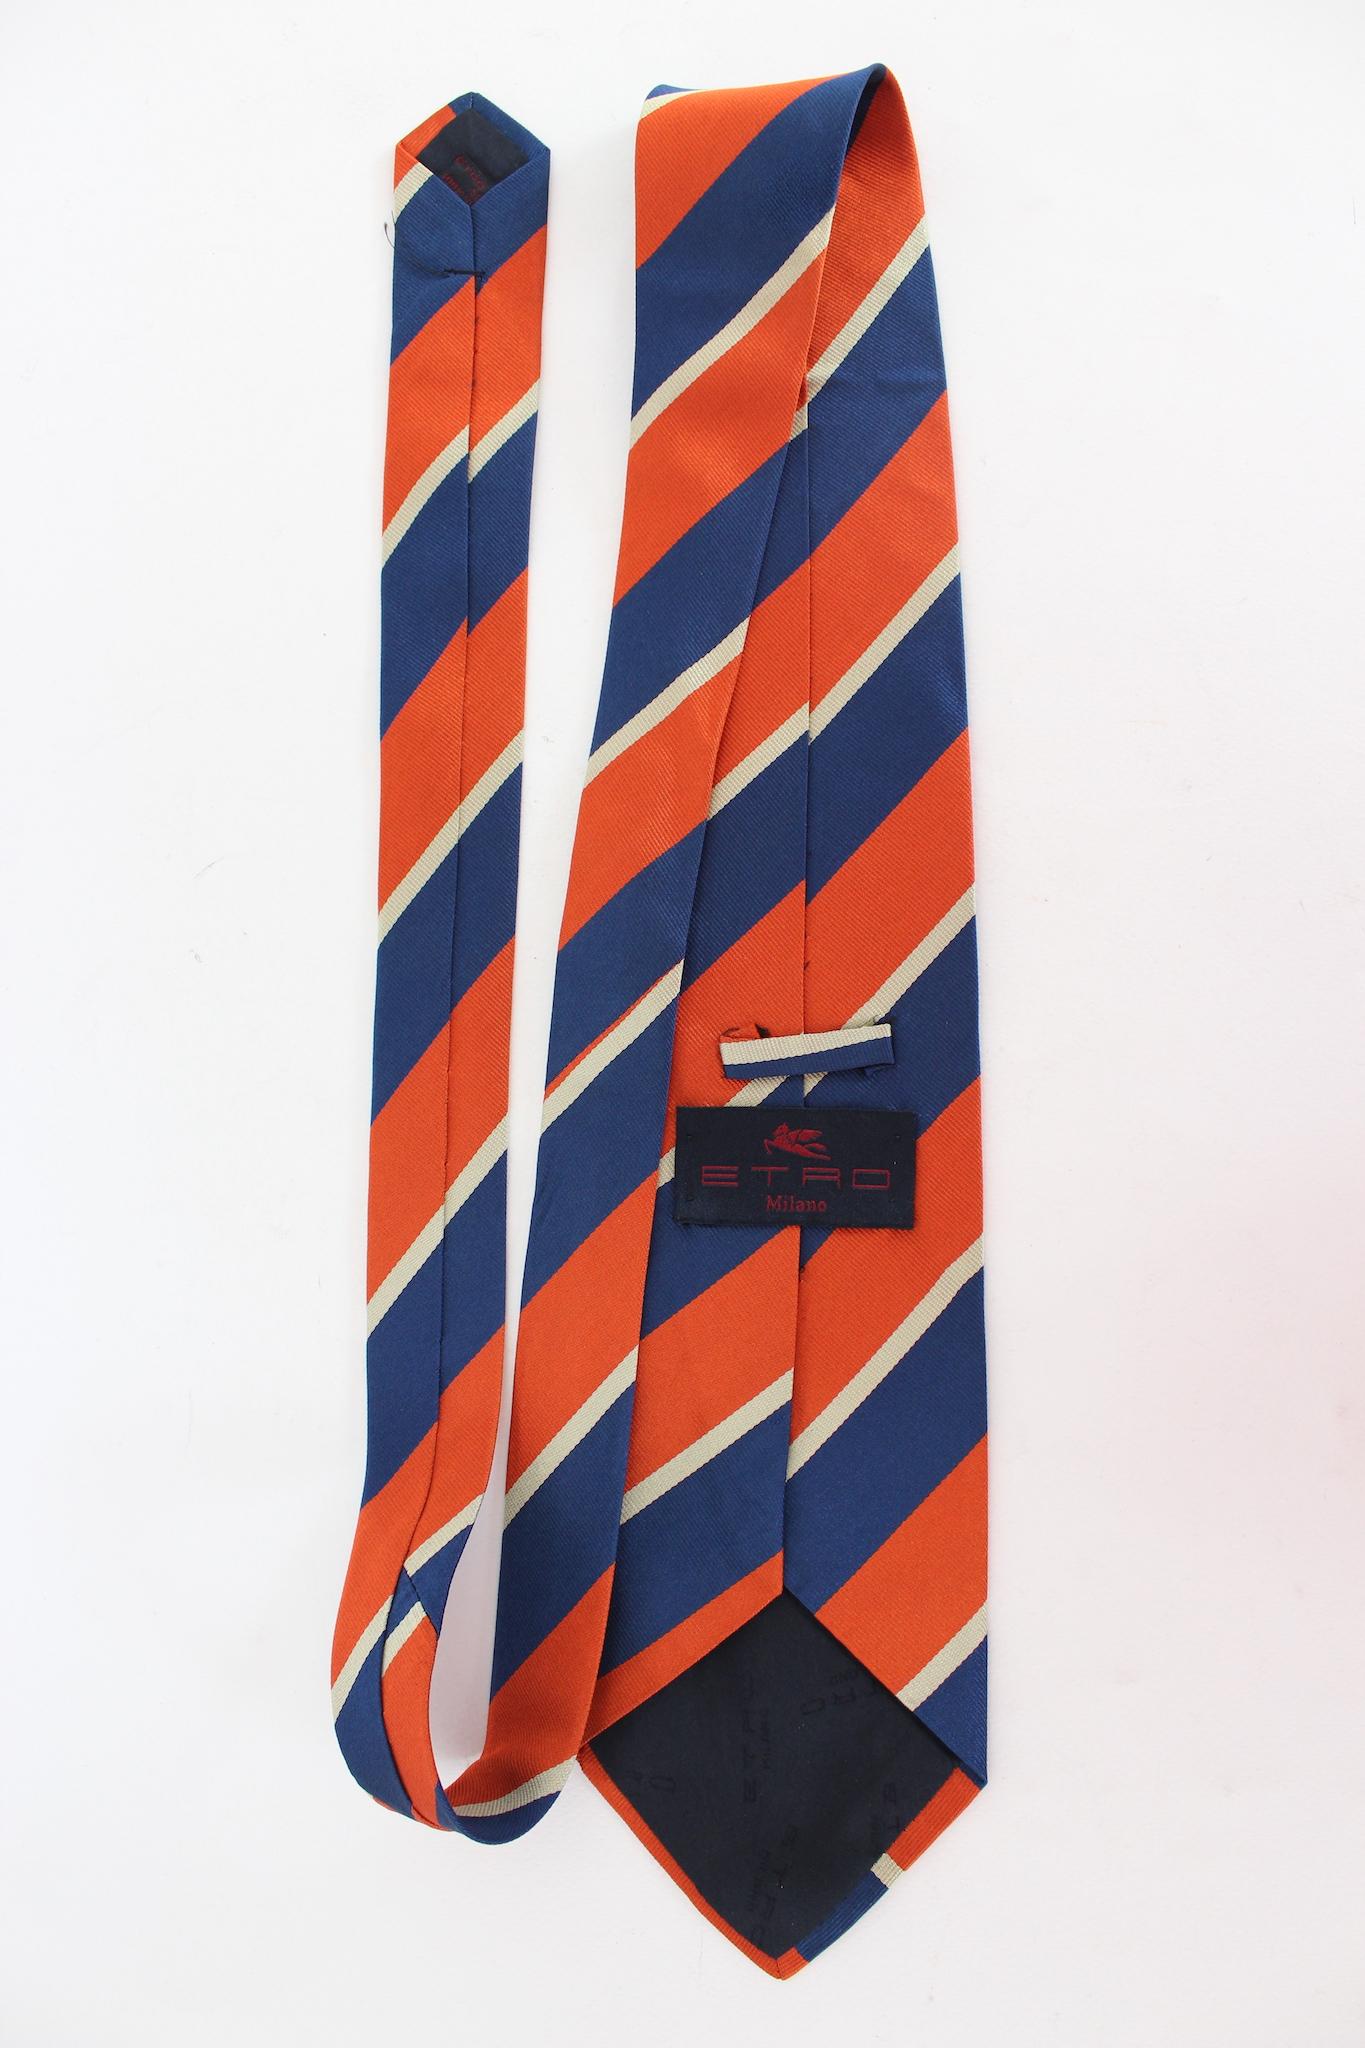 Etro Vintage-Krawatte aus den 2000er Jahren. Orange und blau, gestreiftes Muster. Stoff aus 100% Seide. Hergestellt in Italien.

Länge: 143 cm
Breite: 10 cm